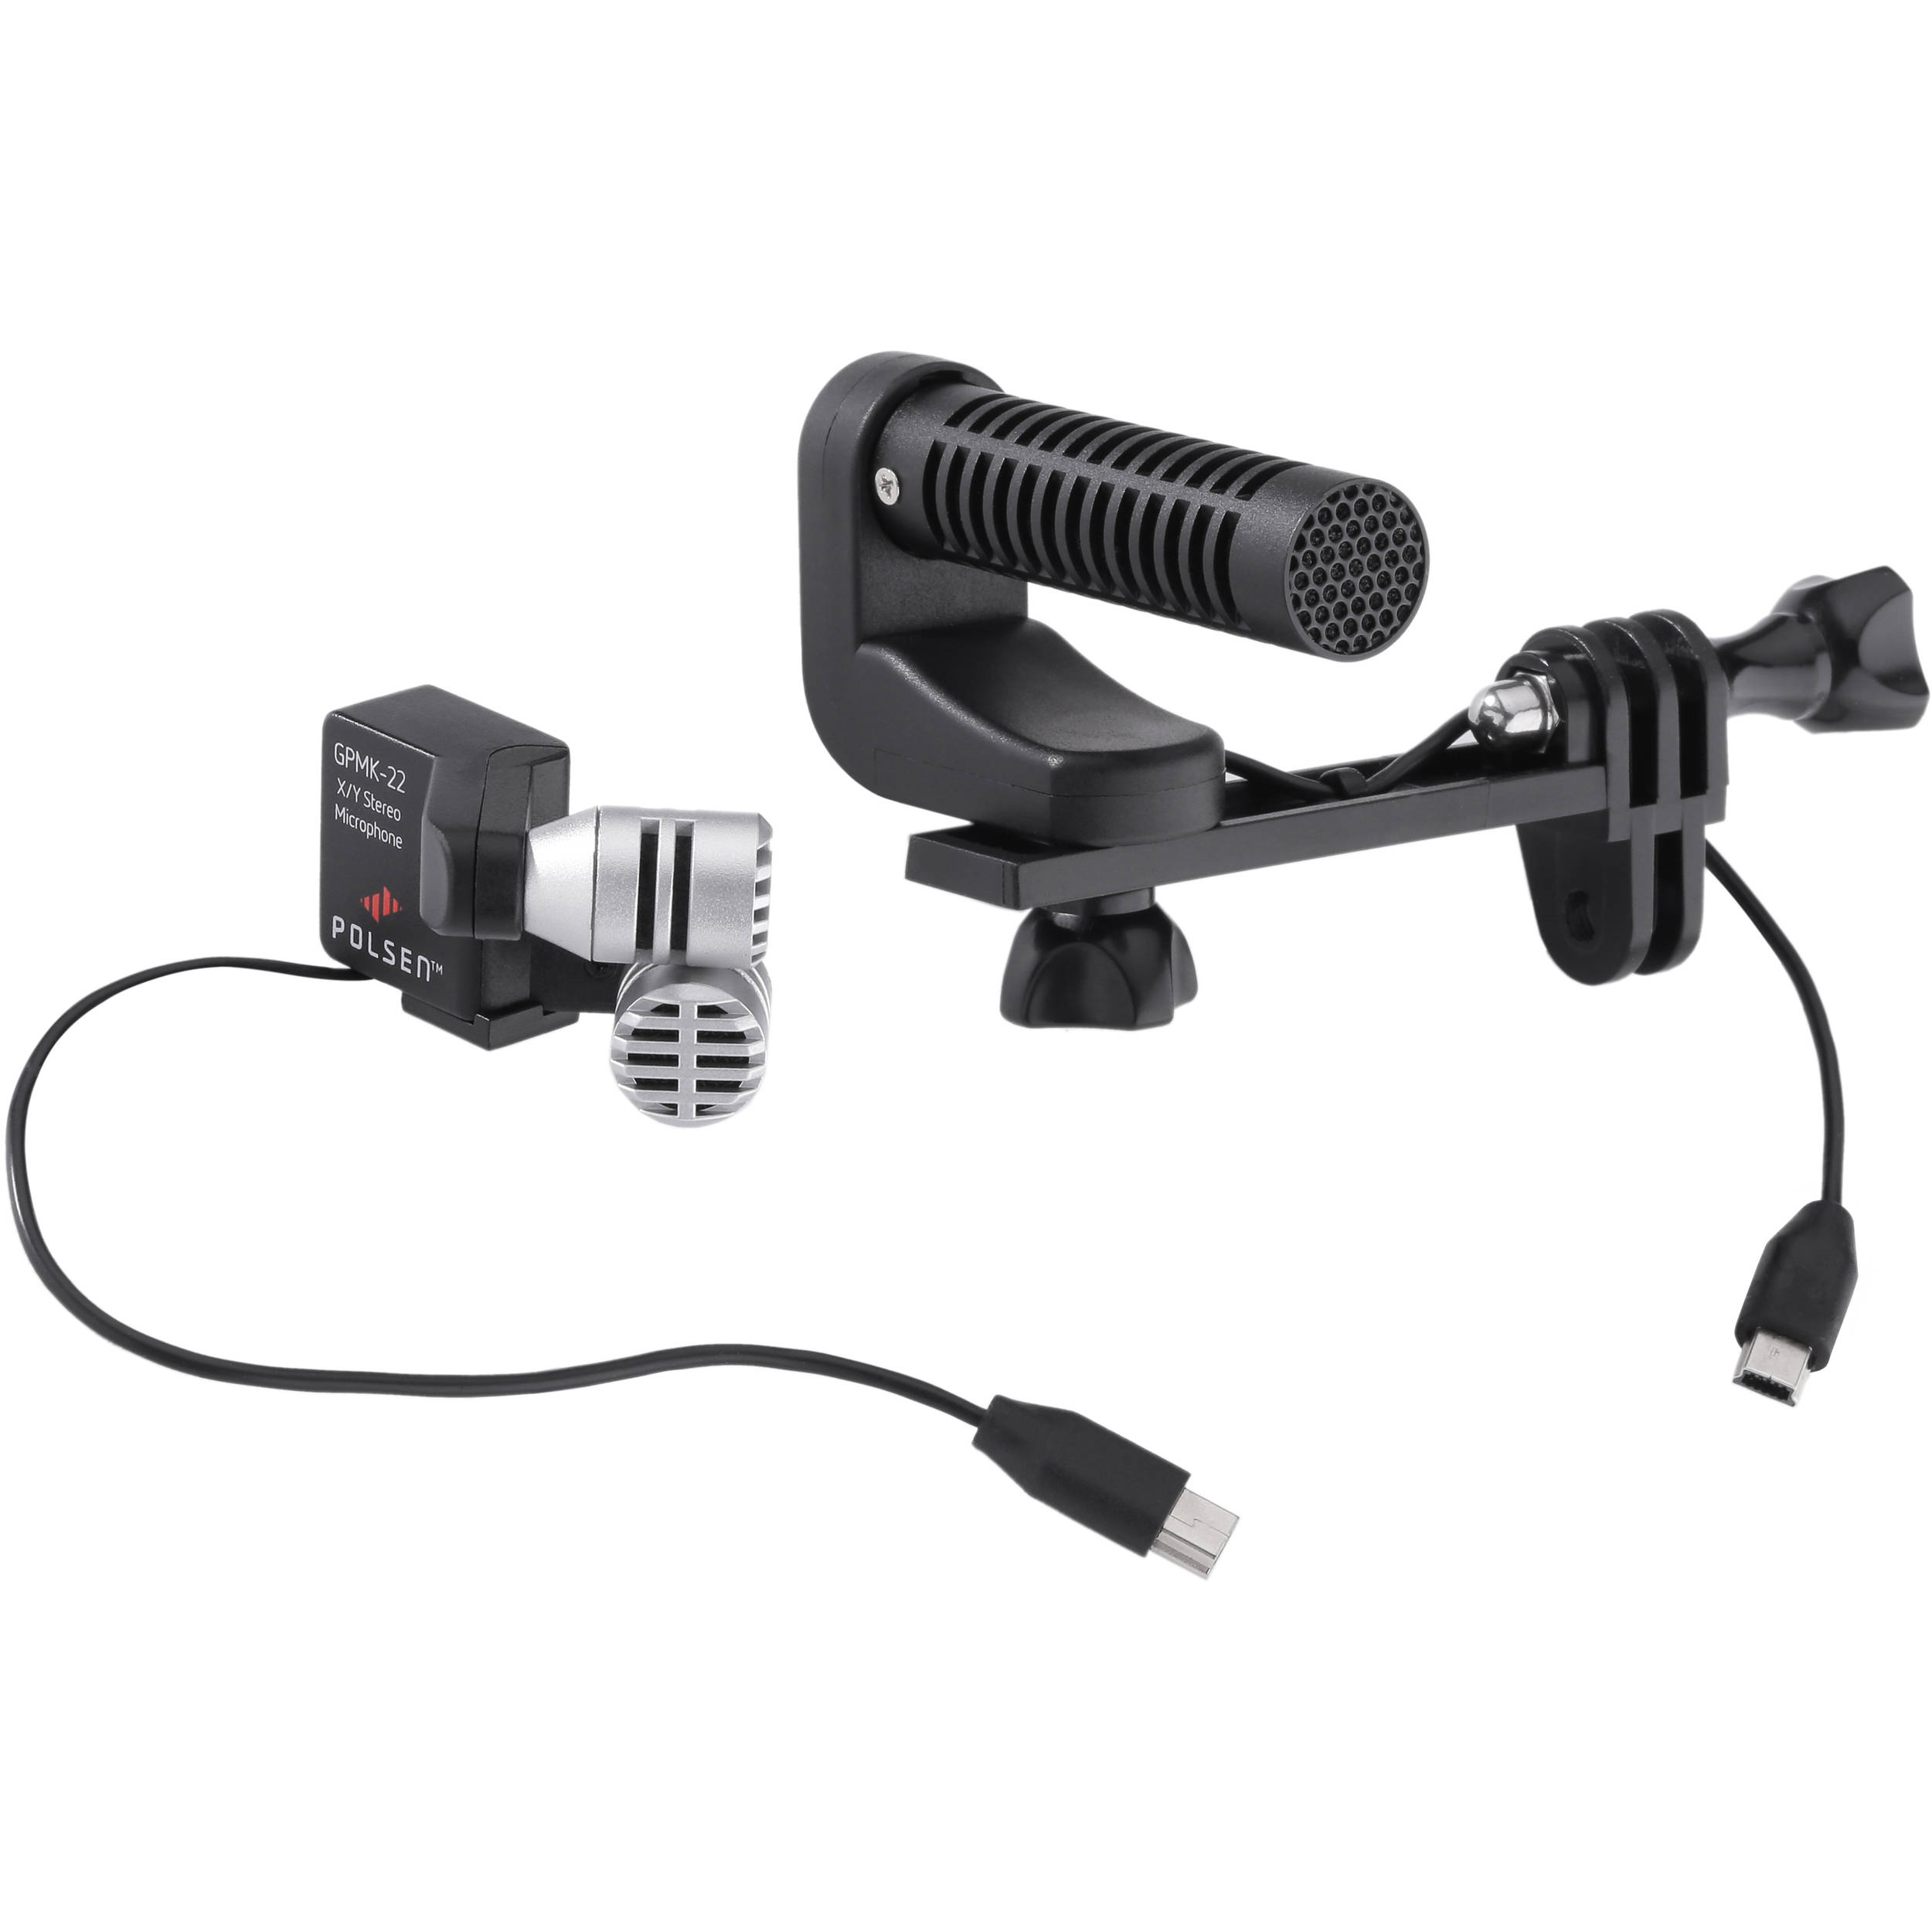 Polsen GPMK-22 GoPro Production Microphone Kit GPMK-22 B&H Photo